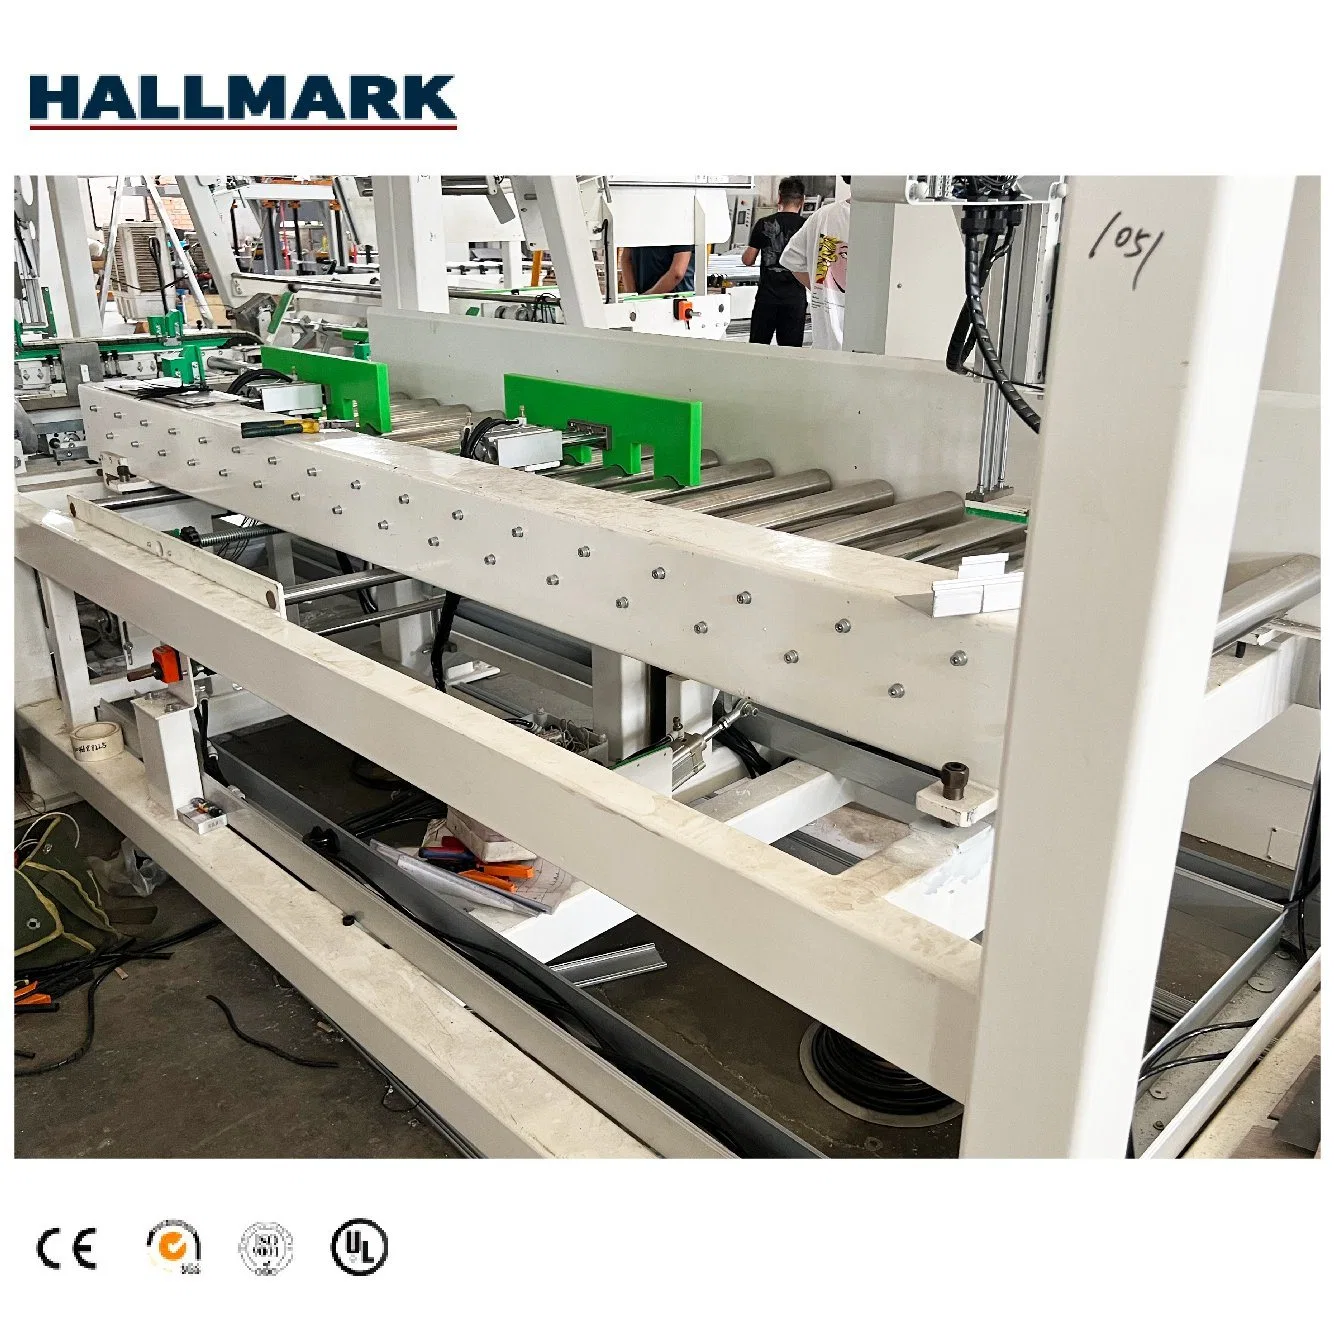 Machine automatique d'emballage de carton pour la ligne de production de revêtement de sol en SPC de la machine d'emballage de revêtement de sol SPC